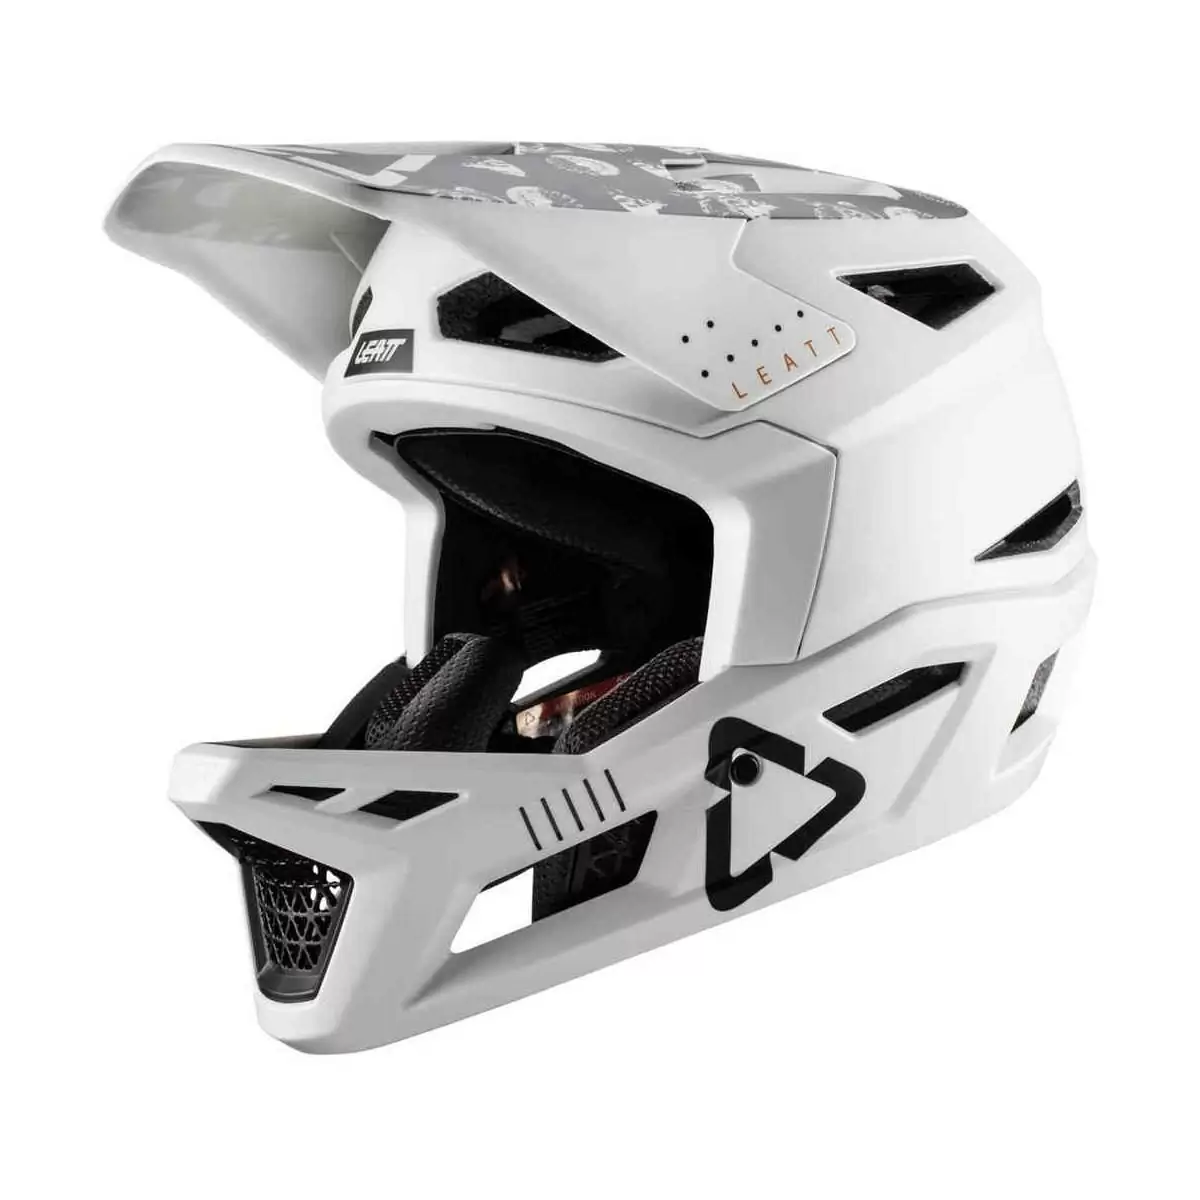 Gravity 4.0 Full Face MTB Helmet White Size L (59-60cm) - image